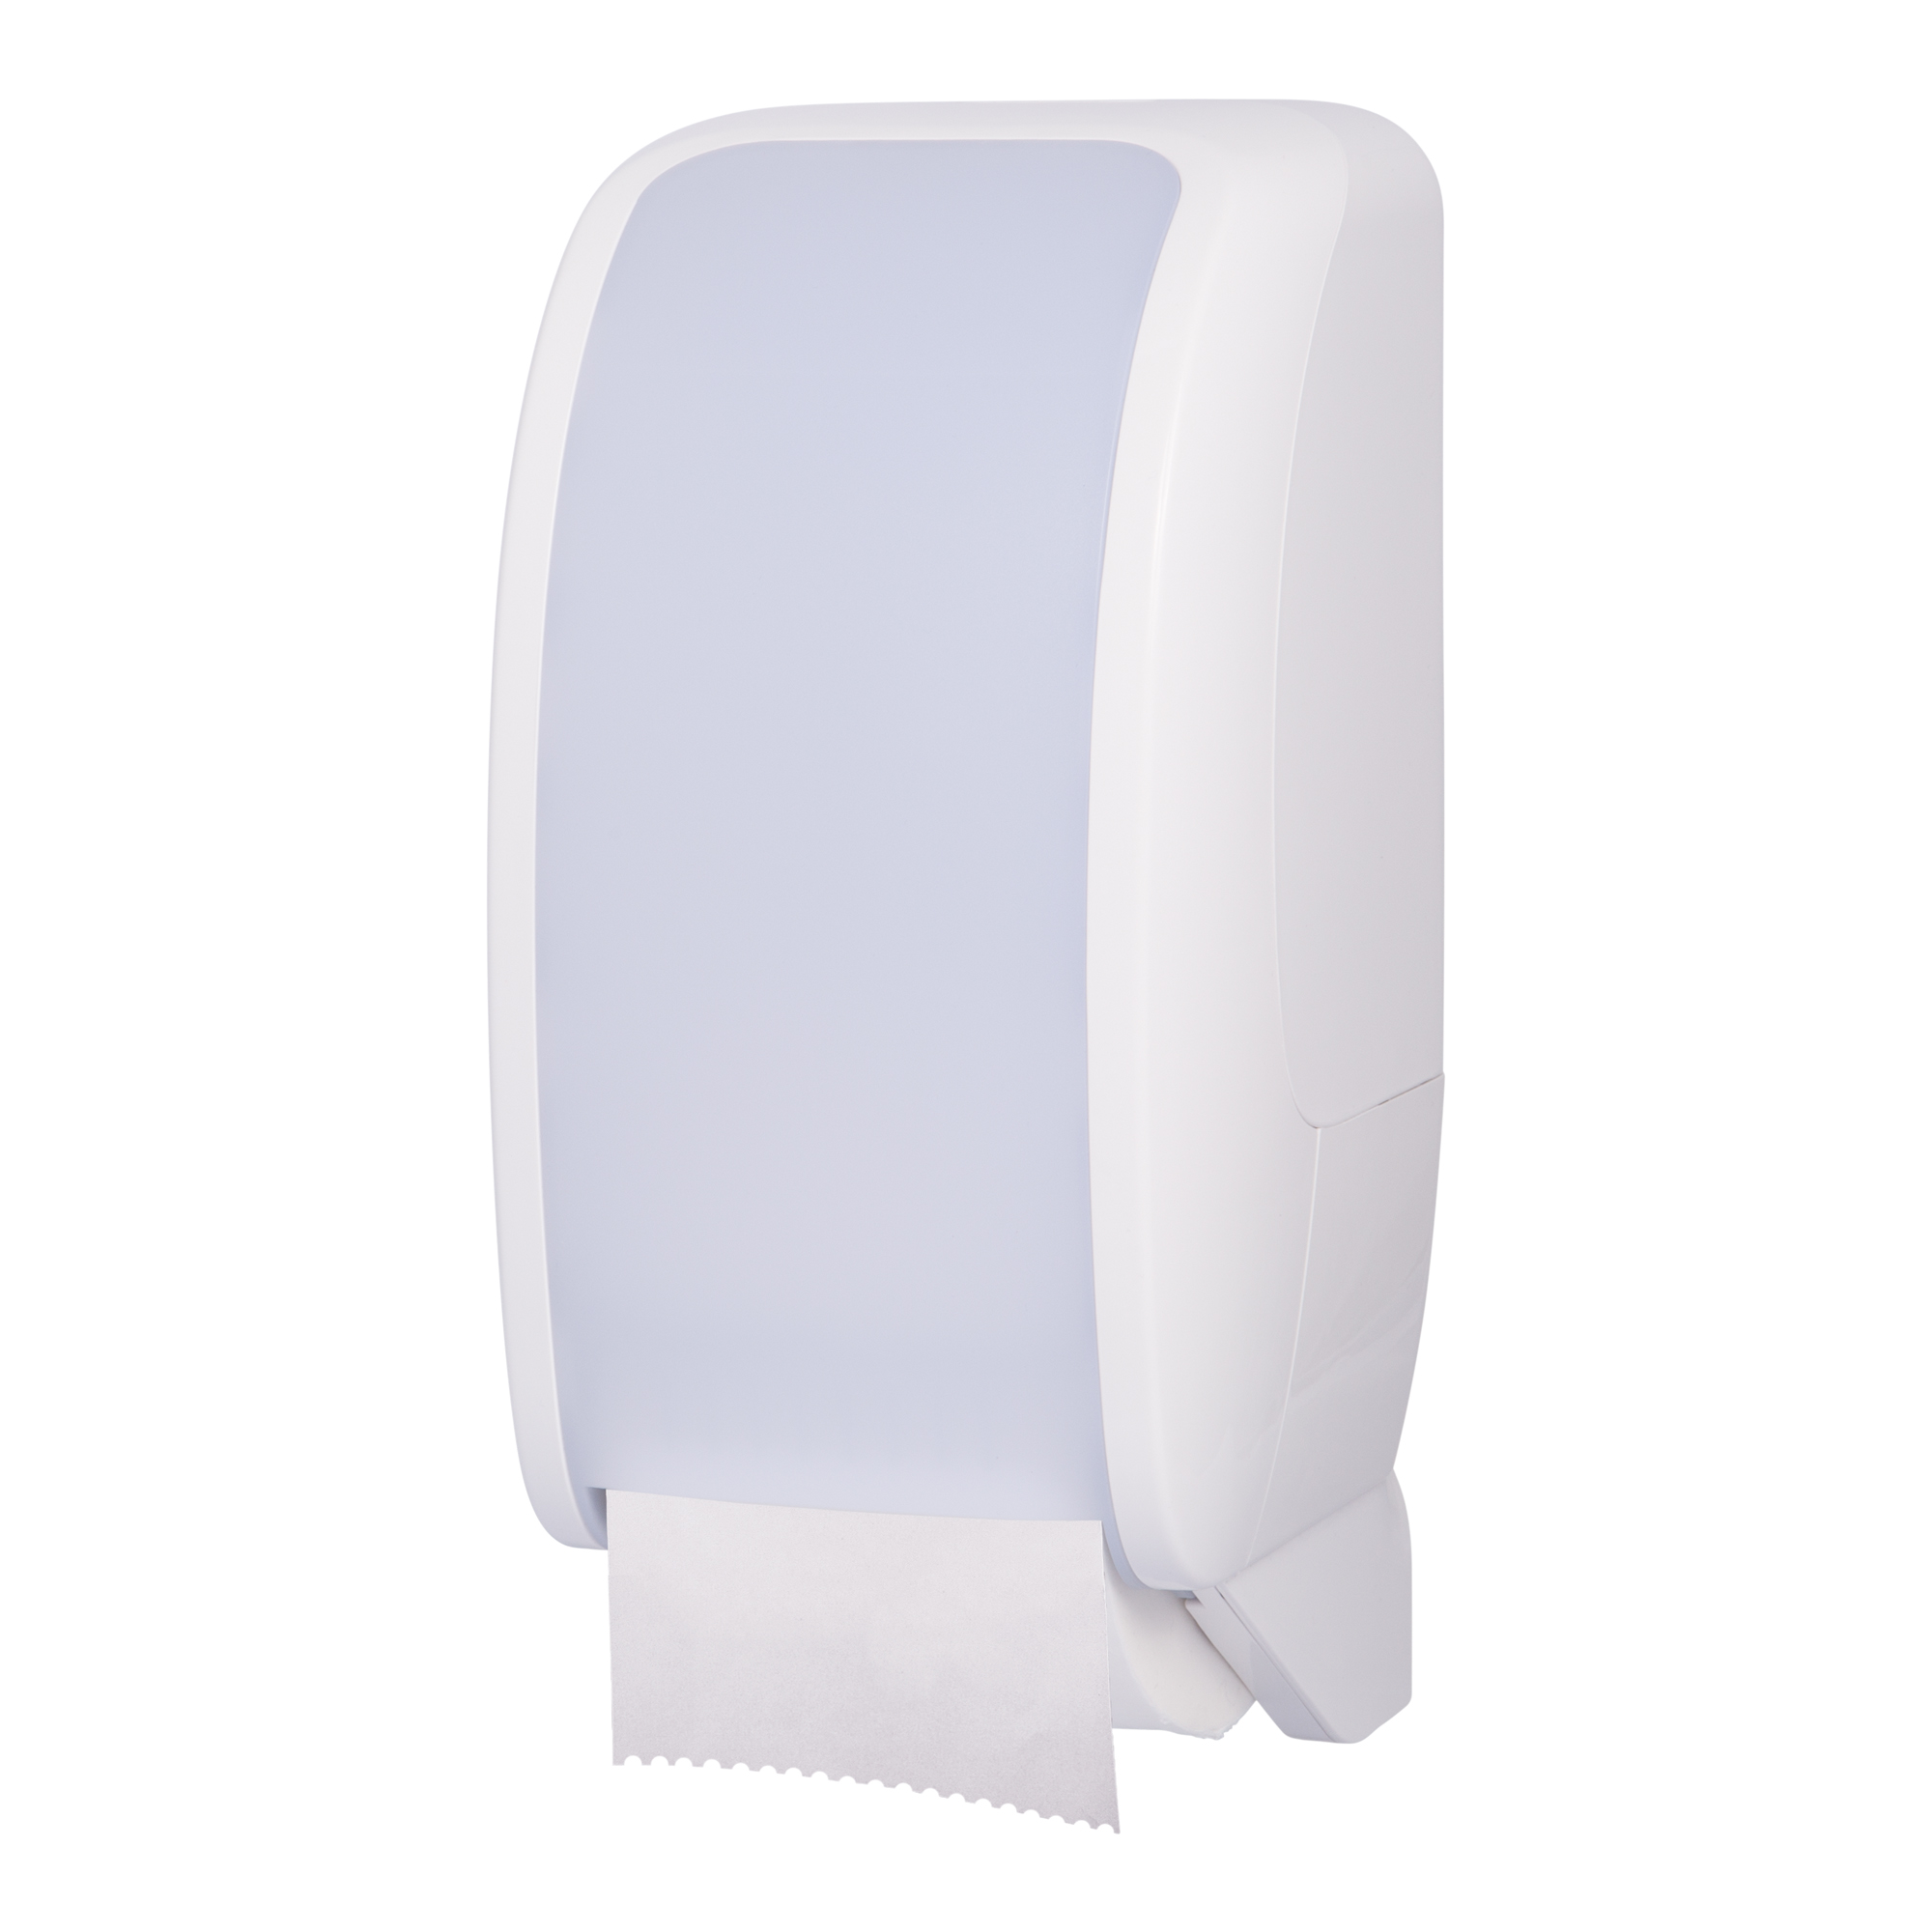 Cosmos Toilettenpapierspender weiß Cosmos-2050_1